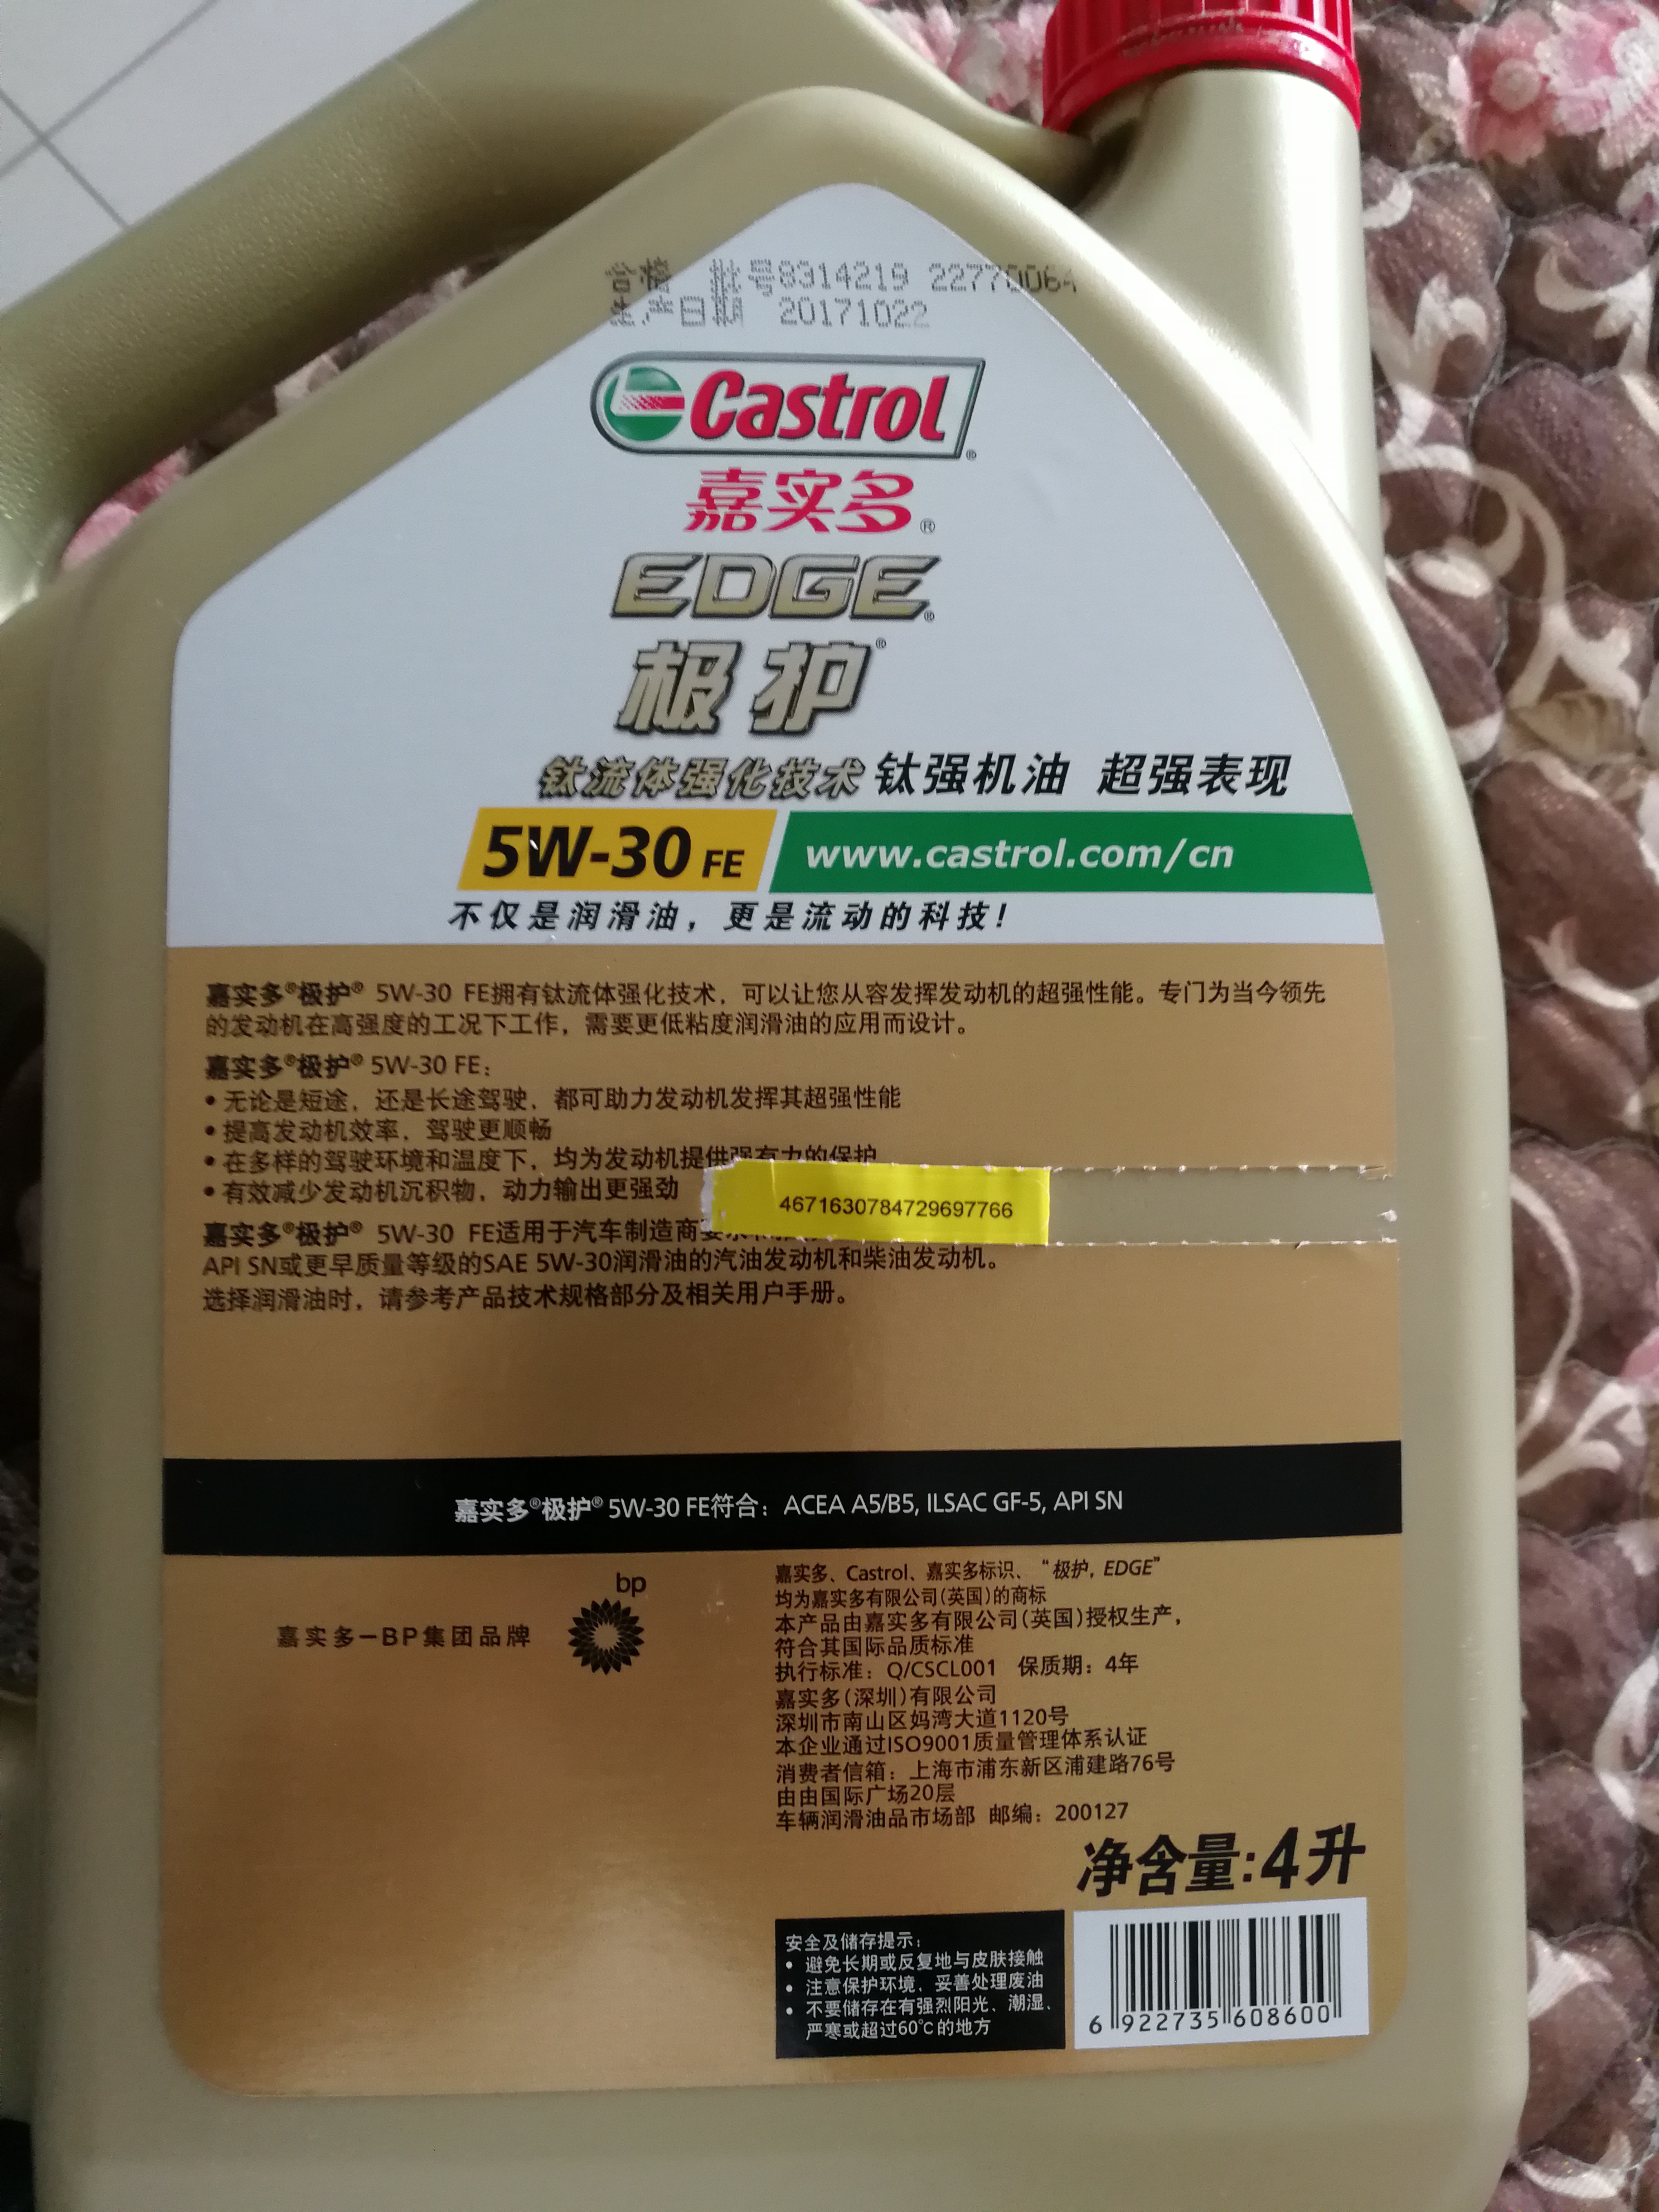 嘉实多(castrol) 极护 5w-30 sn级别 钛流体全合成机油润滑油 4l/瓶